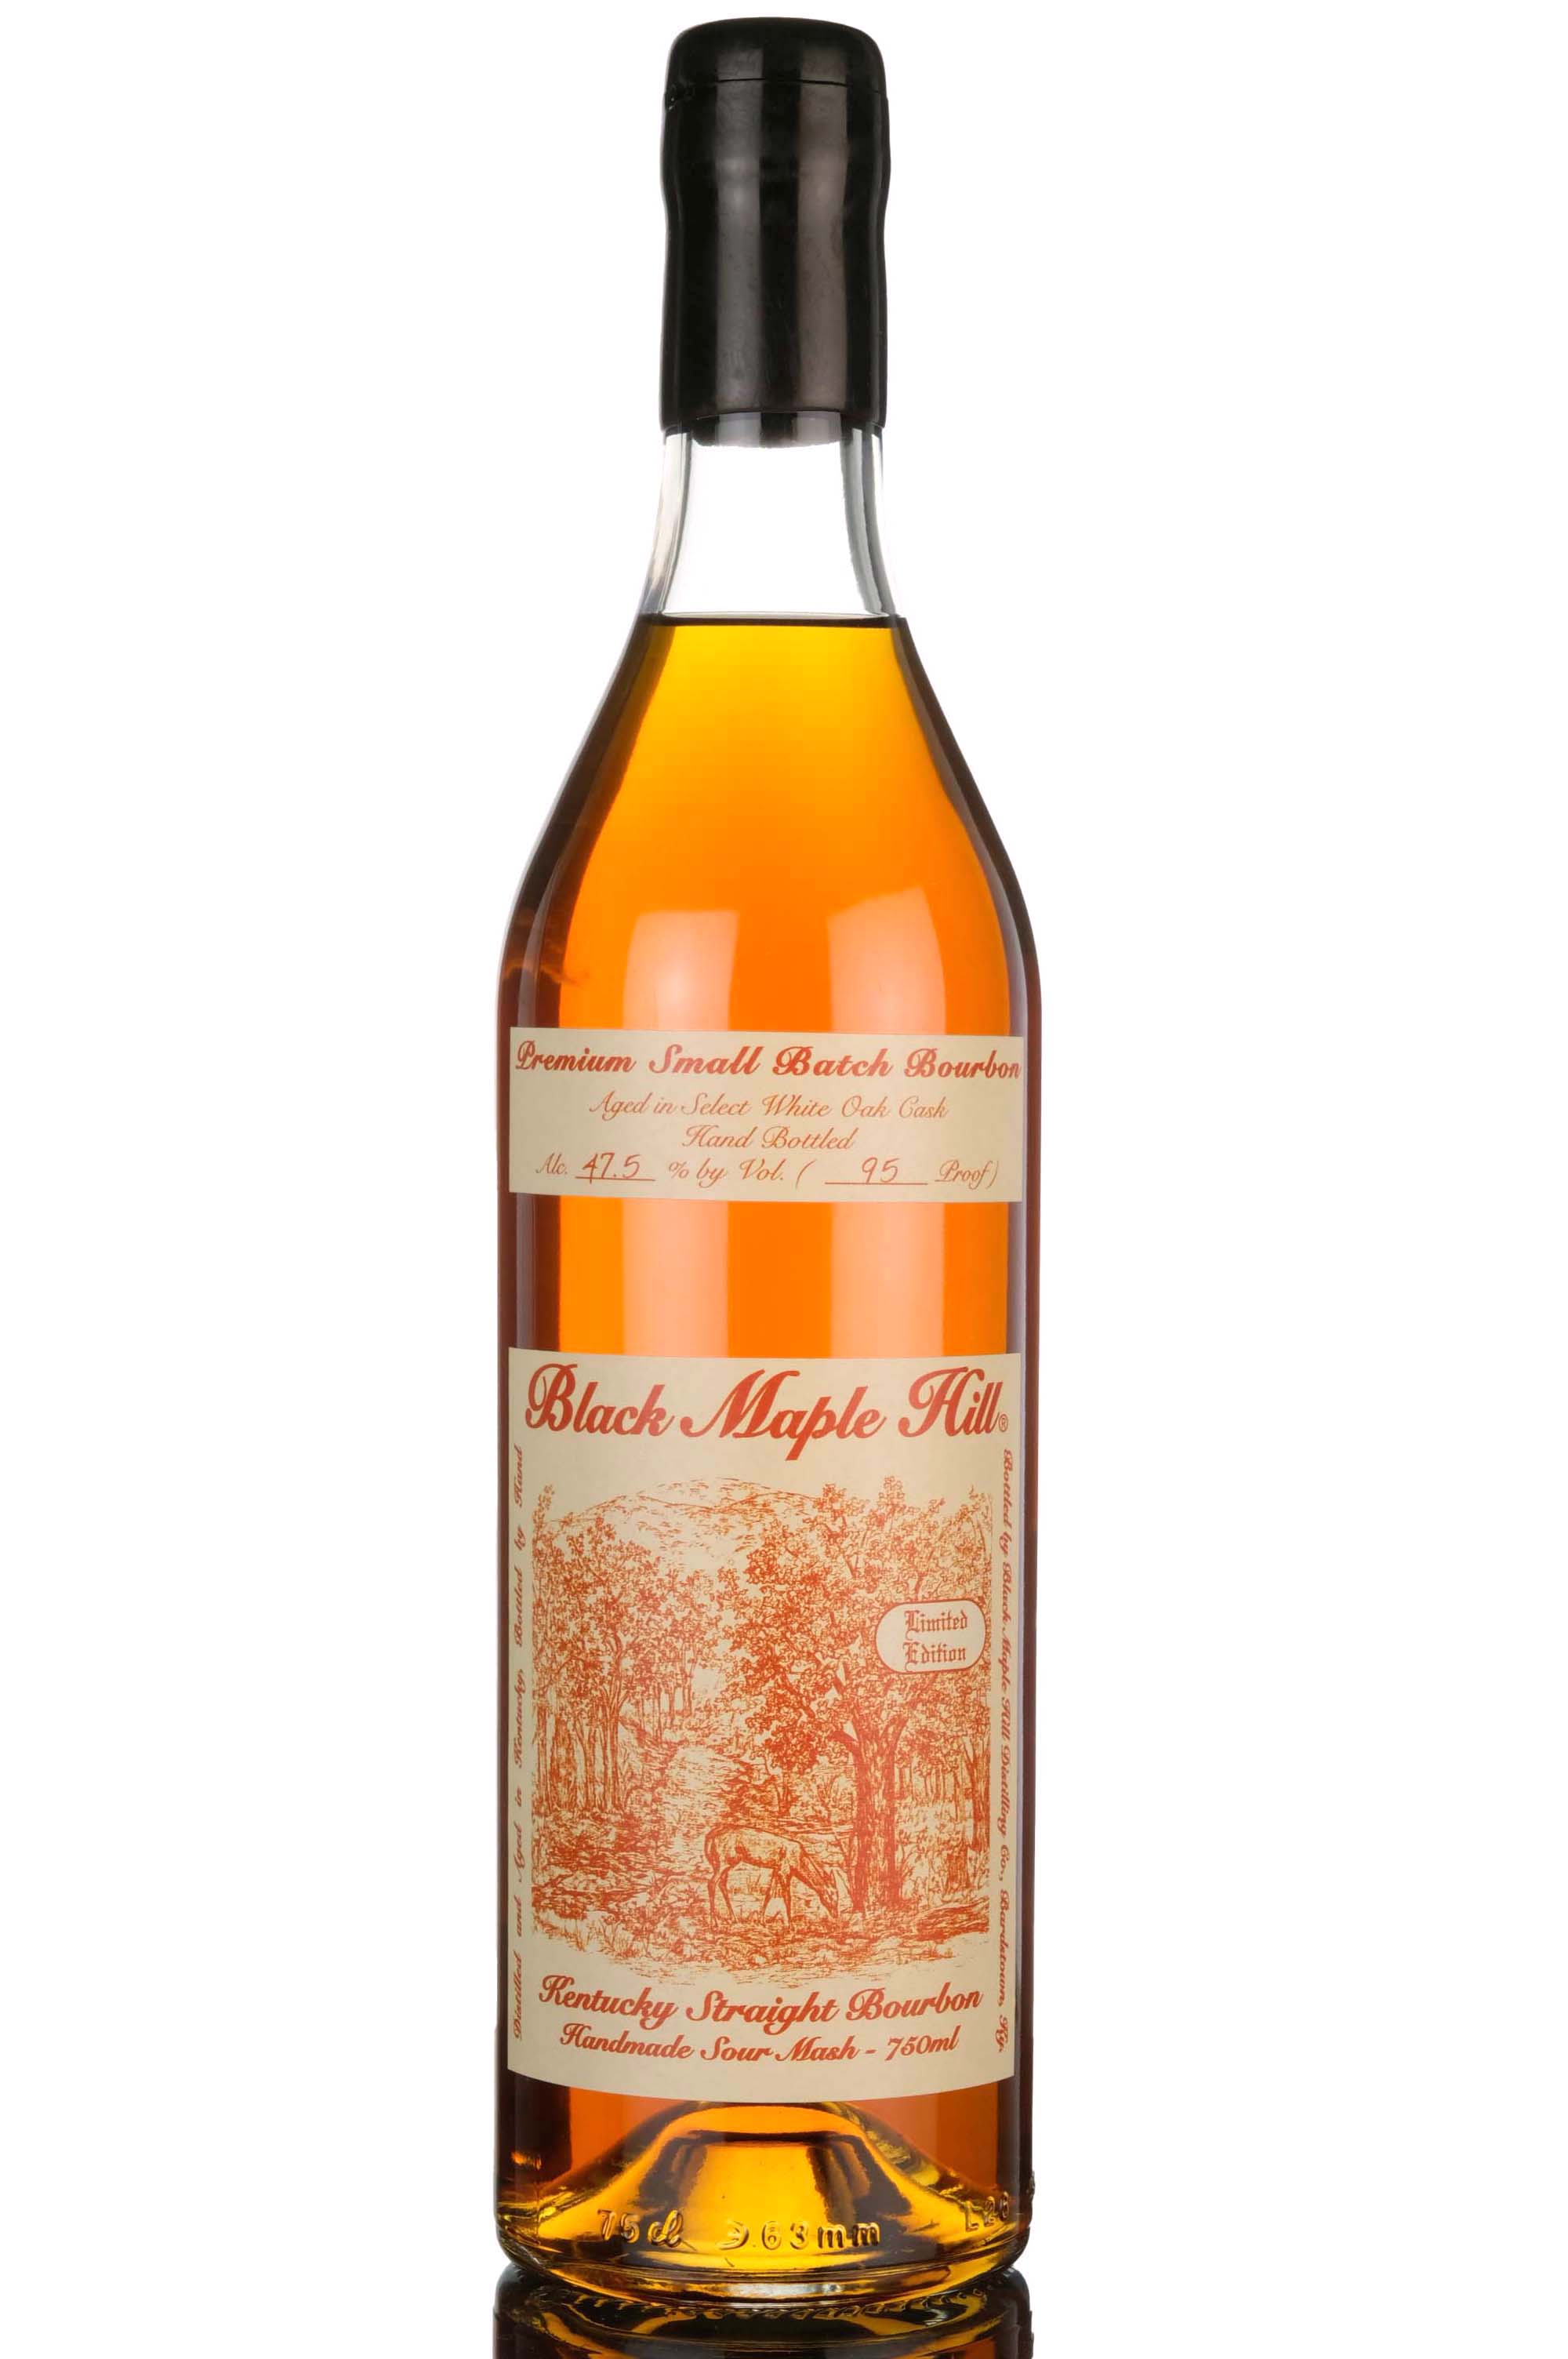 Black Maple Hill Premium Small Batch Bourbon